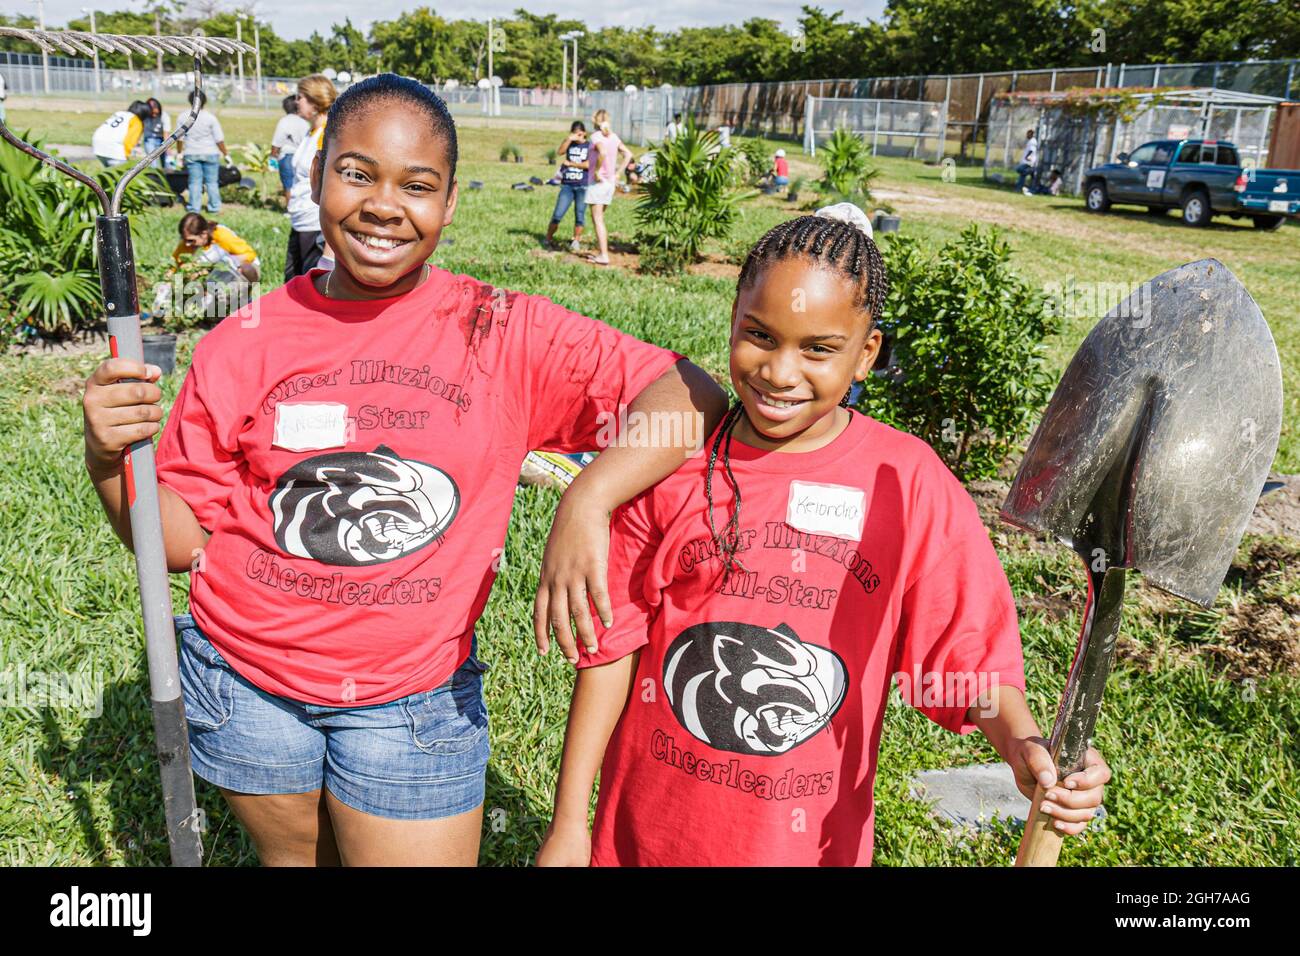 Miami Florida, bénévoles bénévoles bénévoles travail d'équipe travaillant ensemble pour aider les élèves, filles noires amis enfants aménagement paysager plantation Banque D'Images